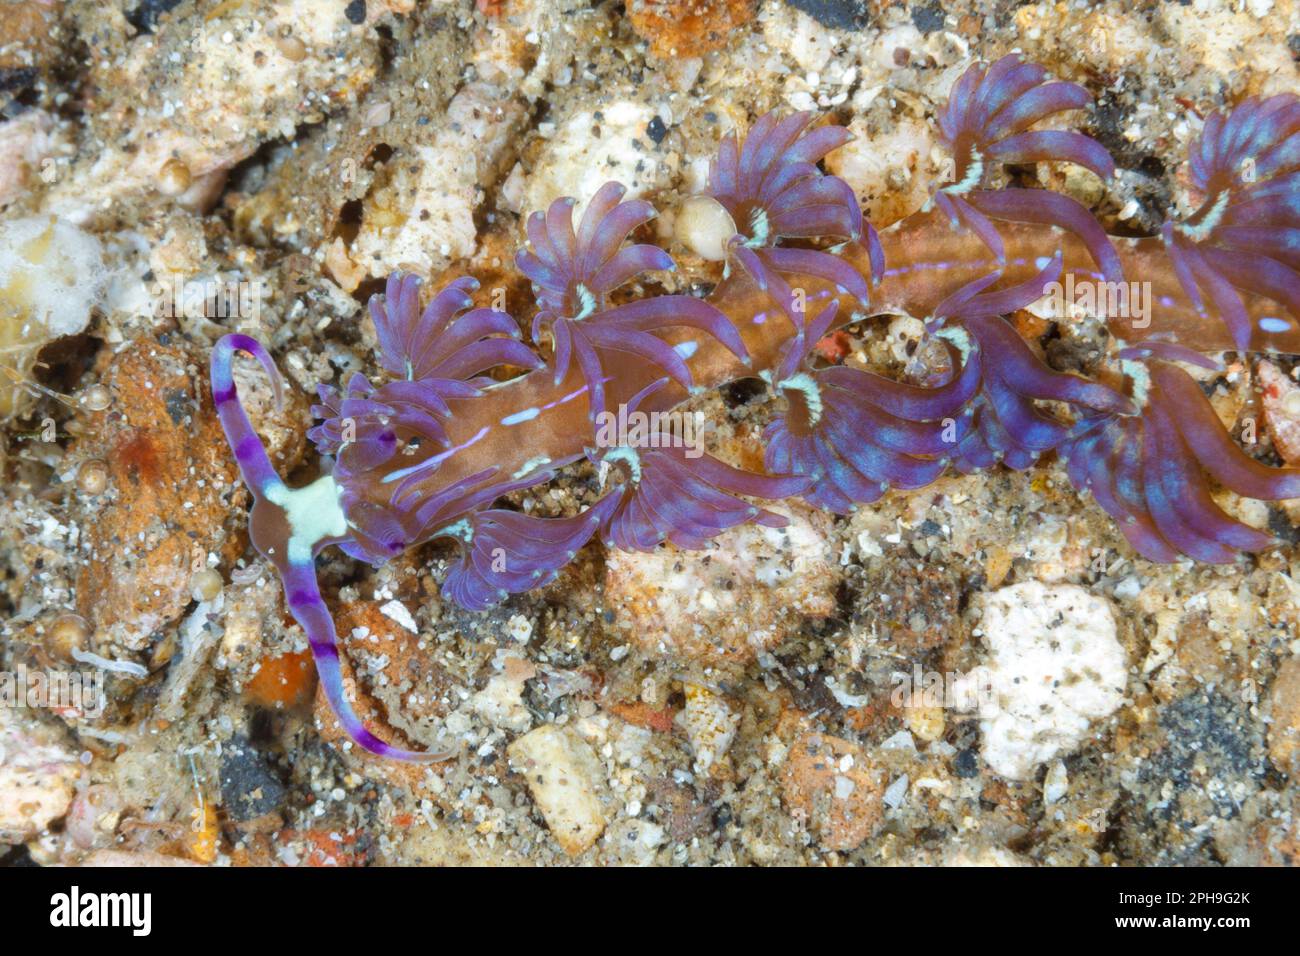 Pteraeolidia ianthina nudibranch. Lembeh Strait, North Sulawesi, Indonesia Stock Photo